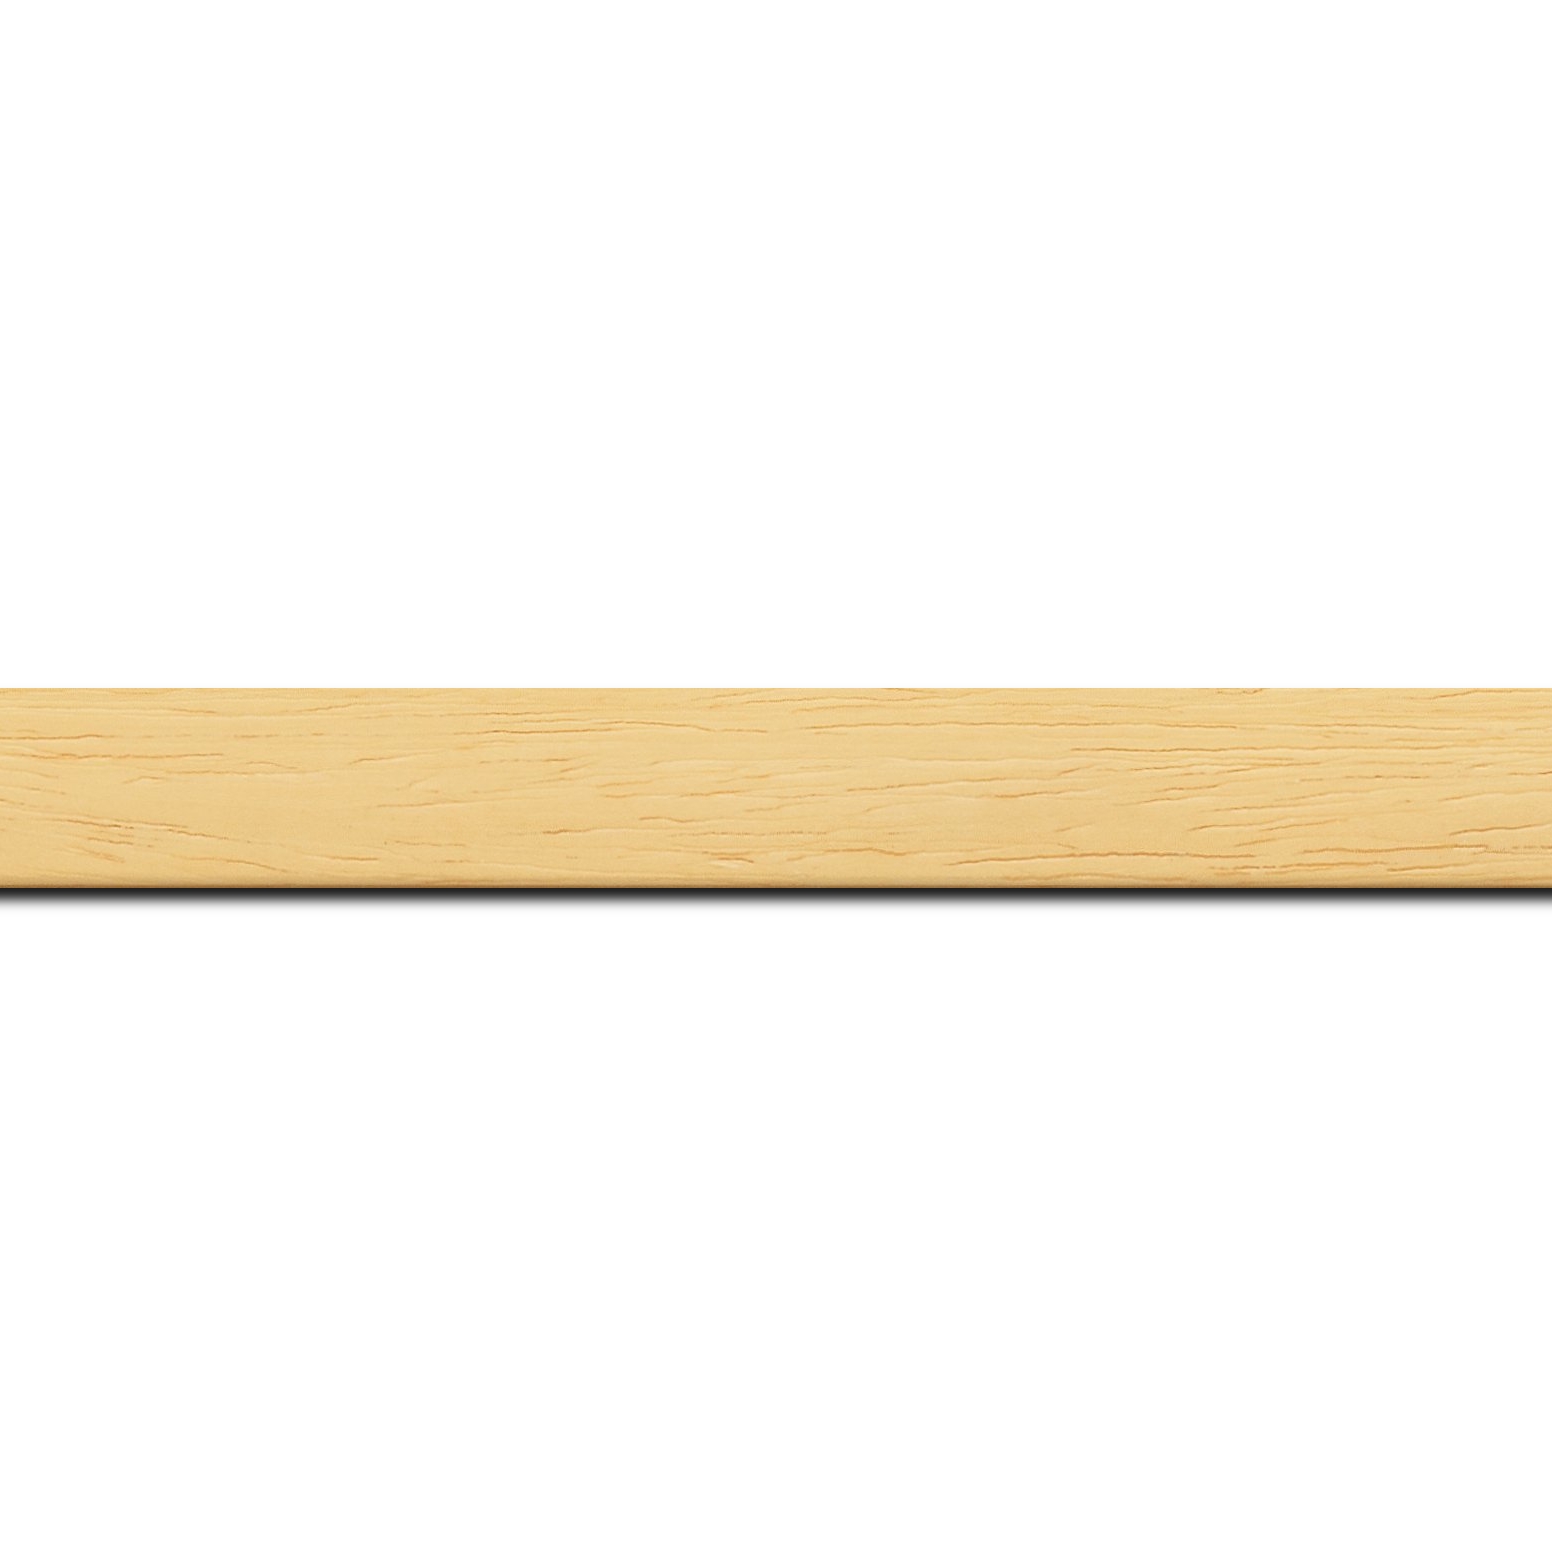 Baguette longueur 1.40m bois profil plat largeur 2cm hauteur 3.3cm couleur naturel satiné (aussi appelé cache clou)